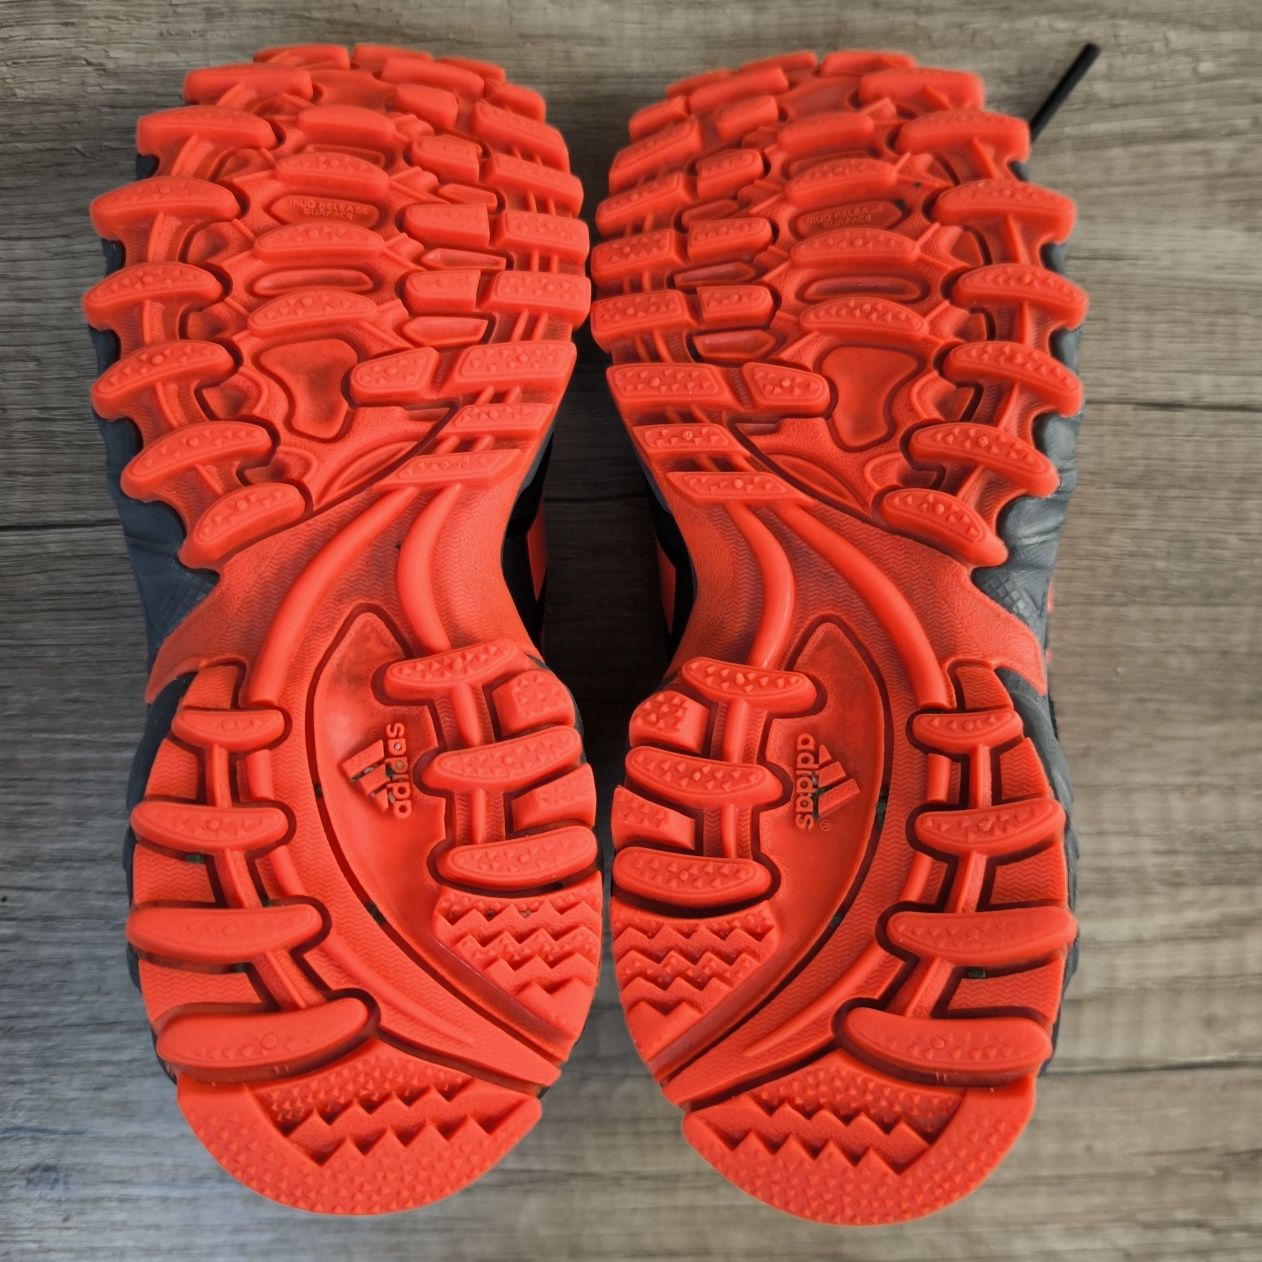 Adidas buty do piłki nożnej, piłka nożna, trekking, turfy 28 18 cm